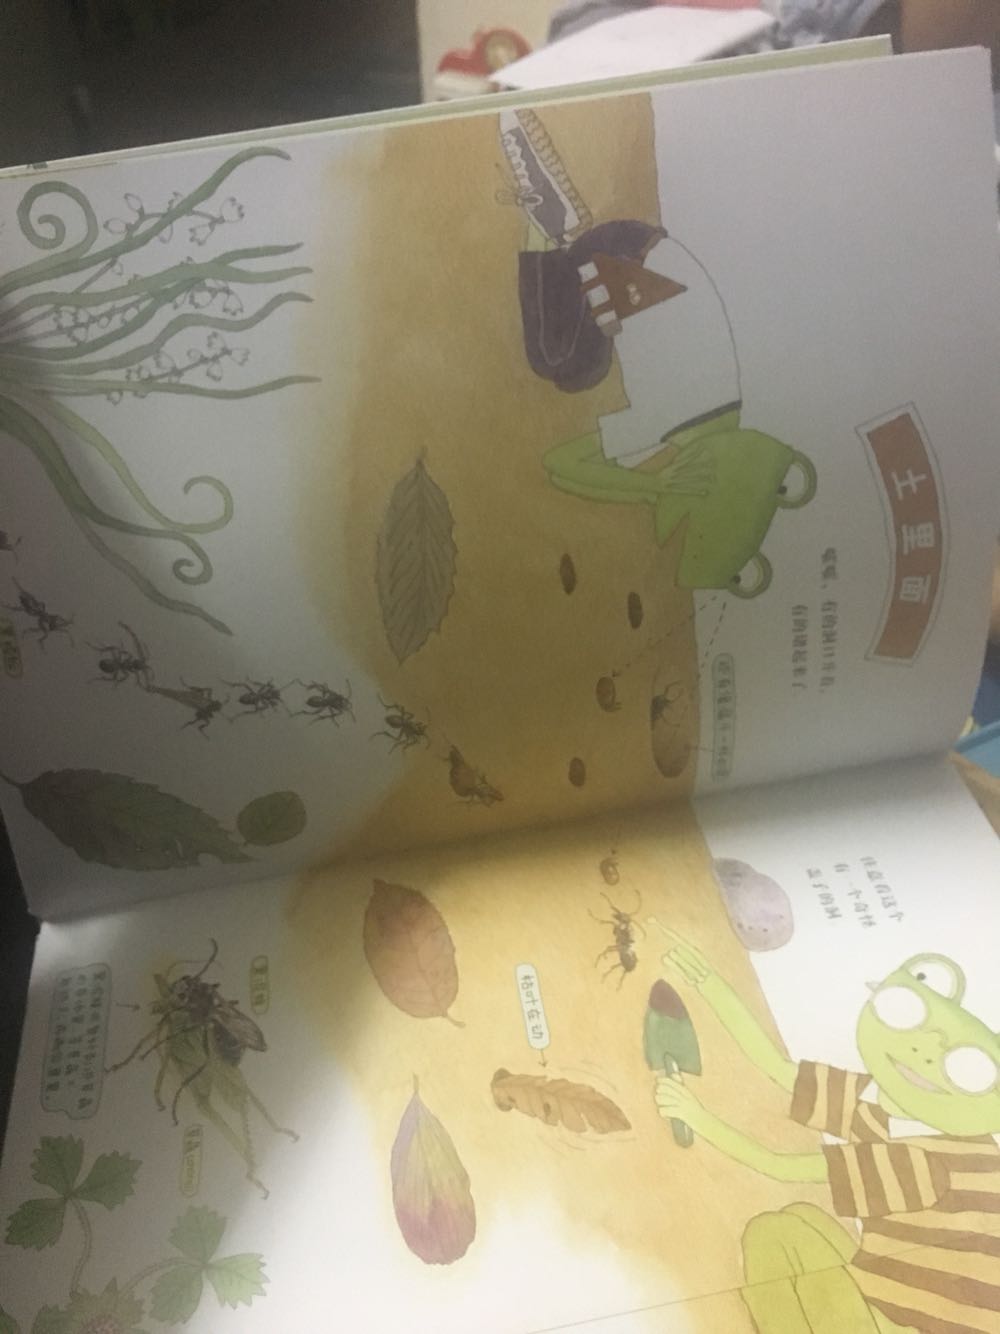 很不错的一本自然书，让孩子认识昆虫，平时看到都会很喜欢。